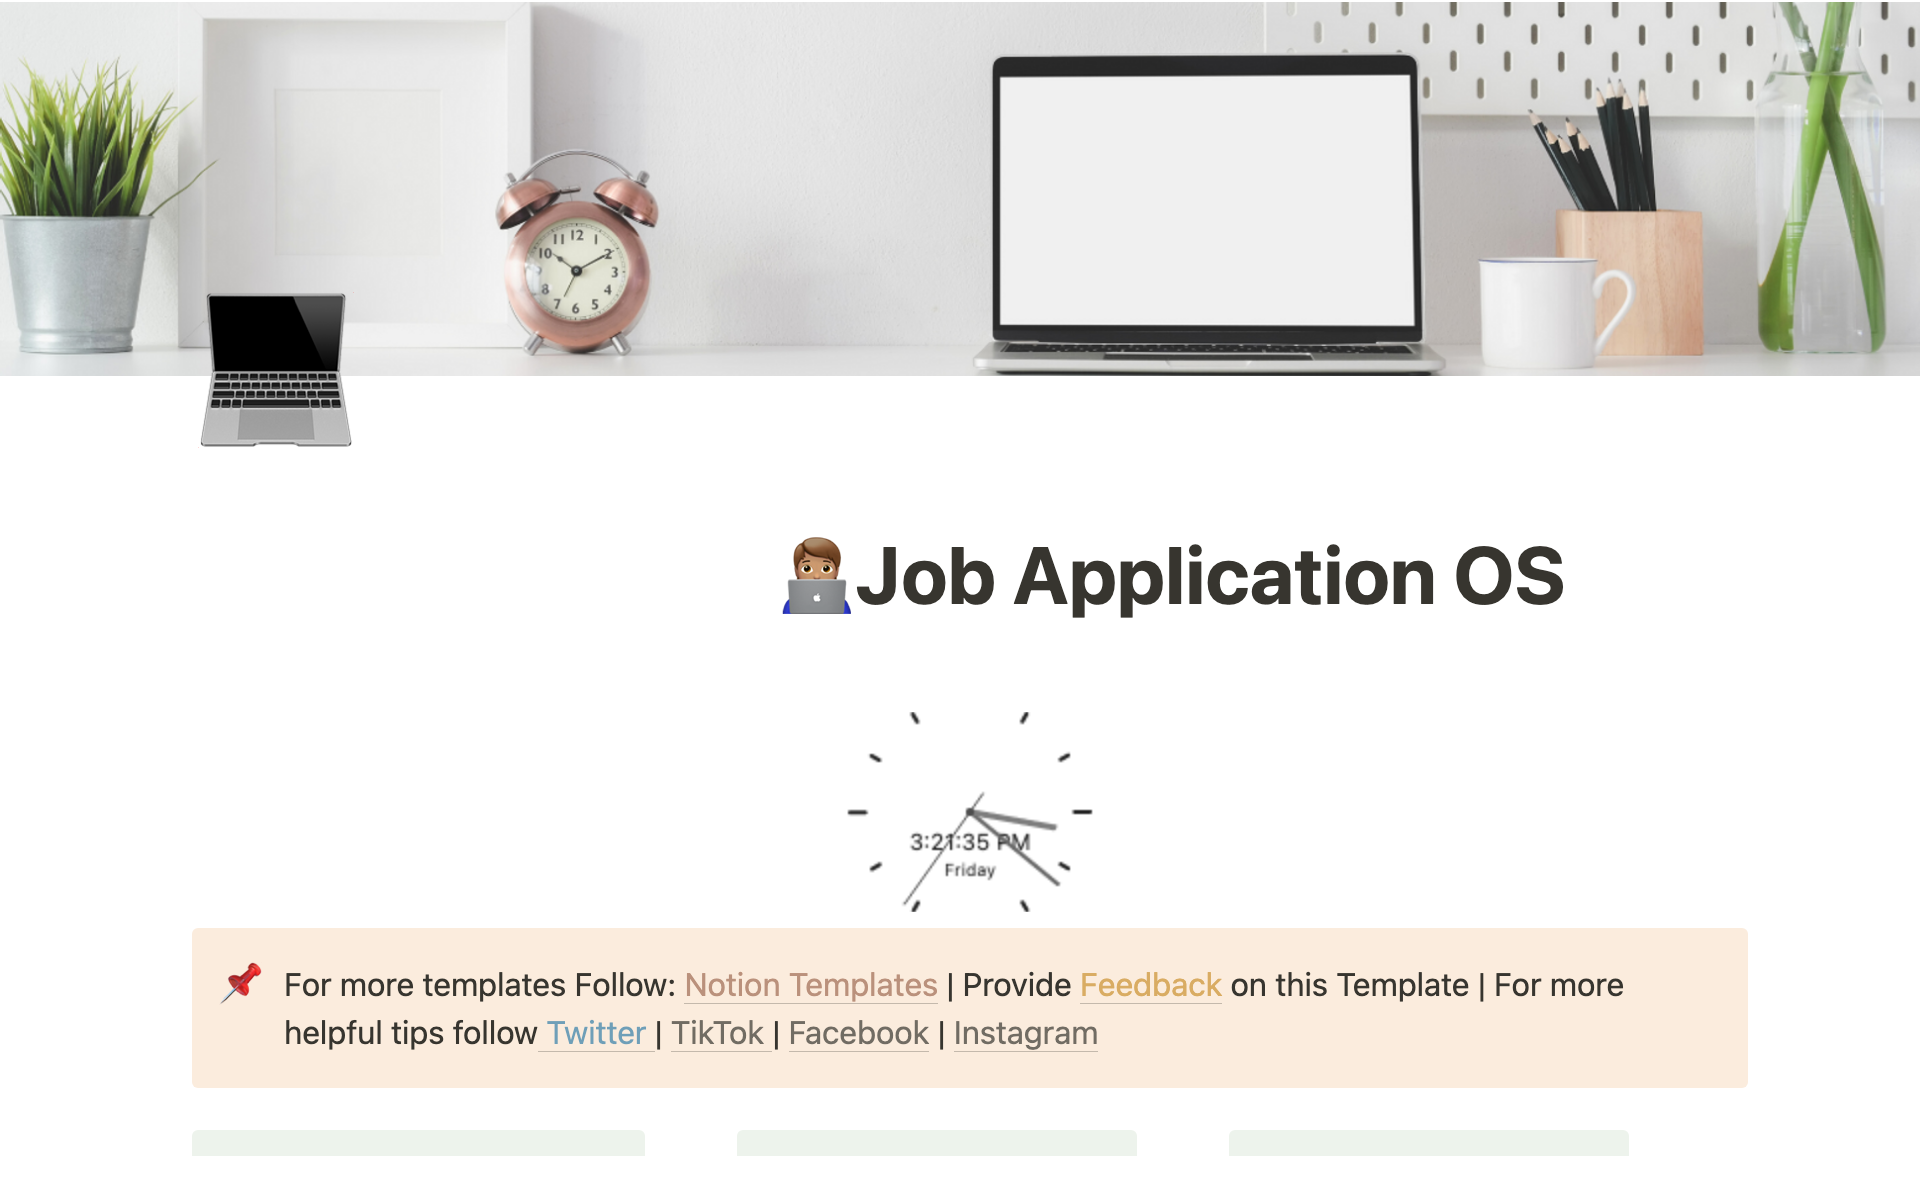 Aperçu du modèle de Job Application OS